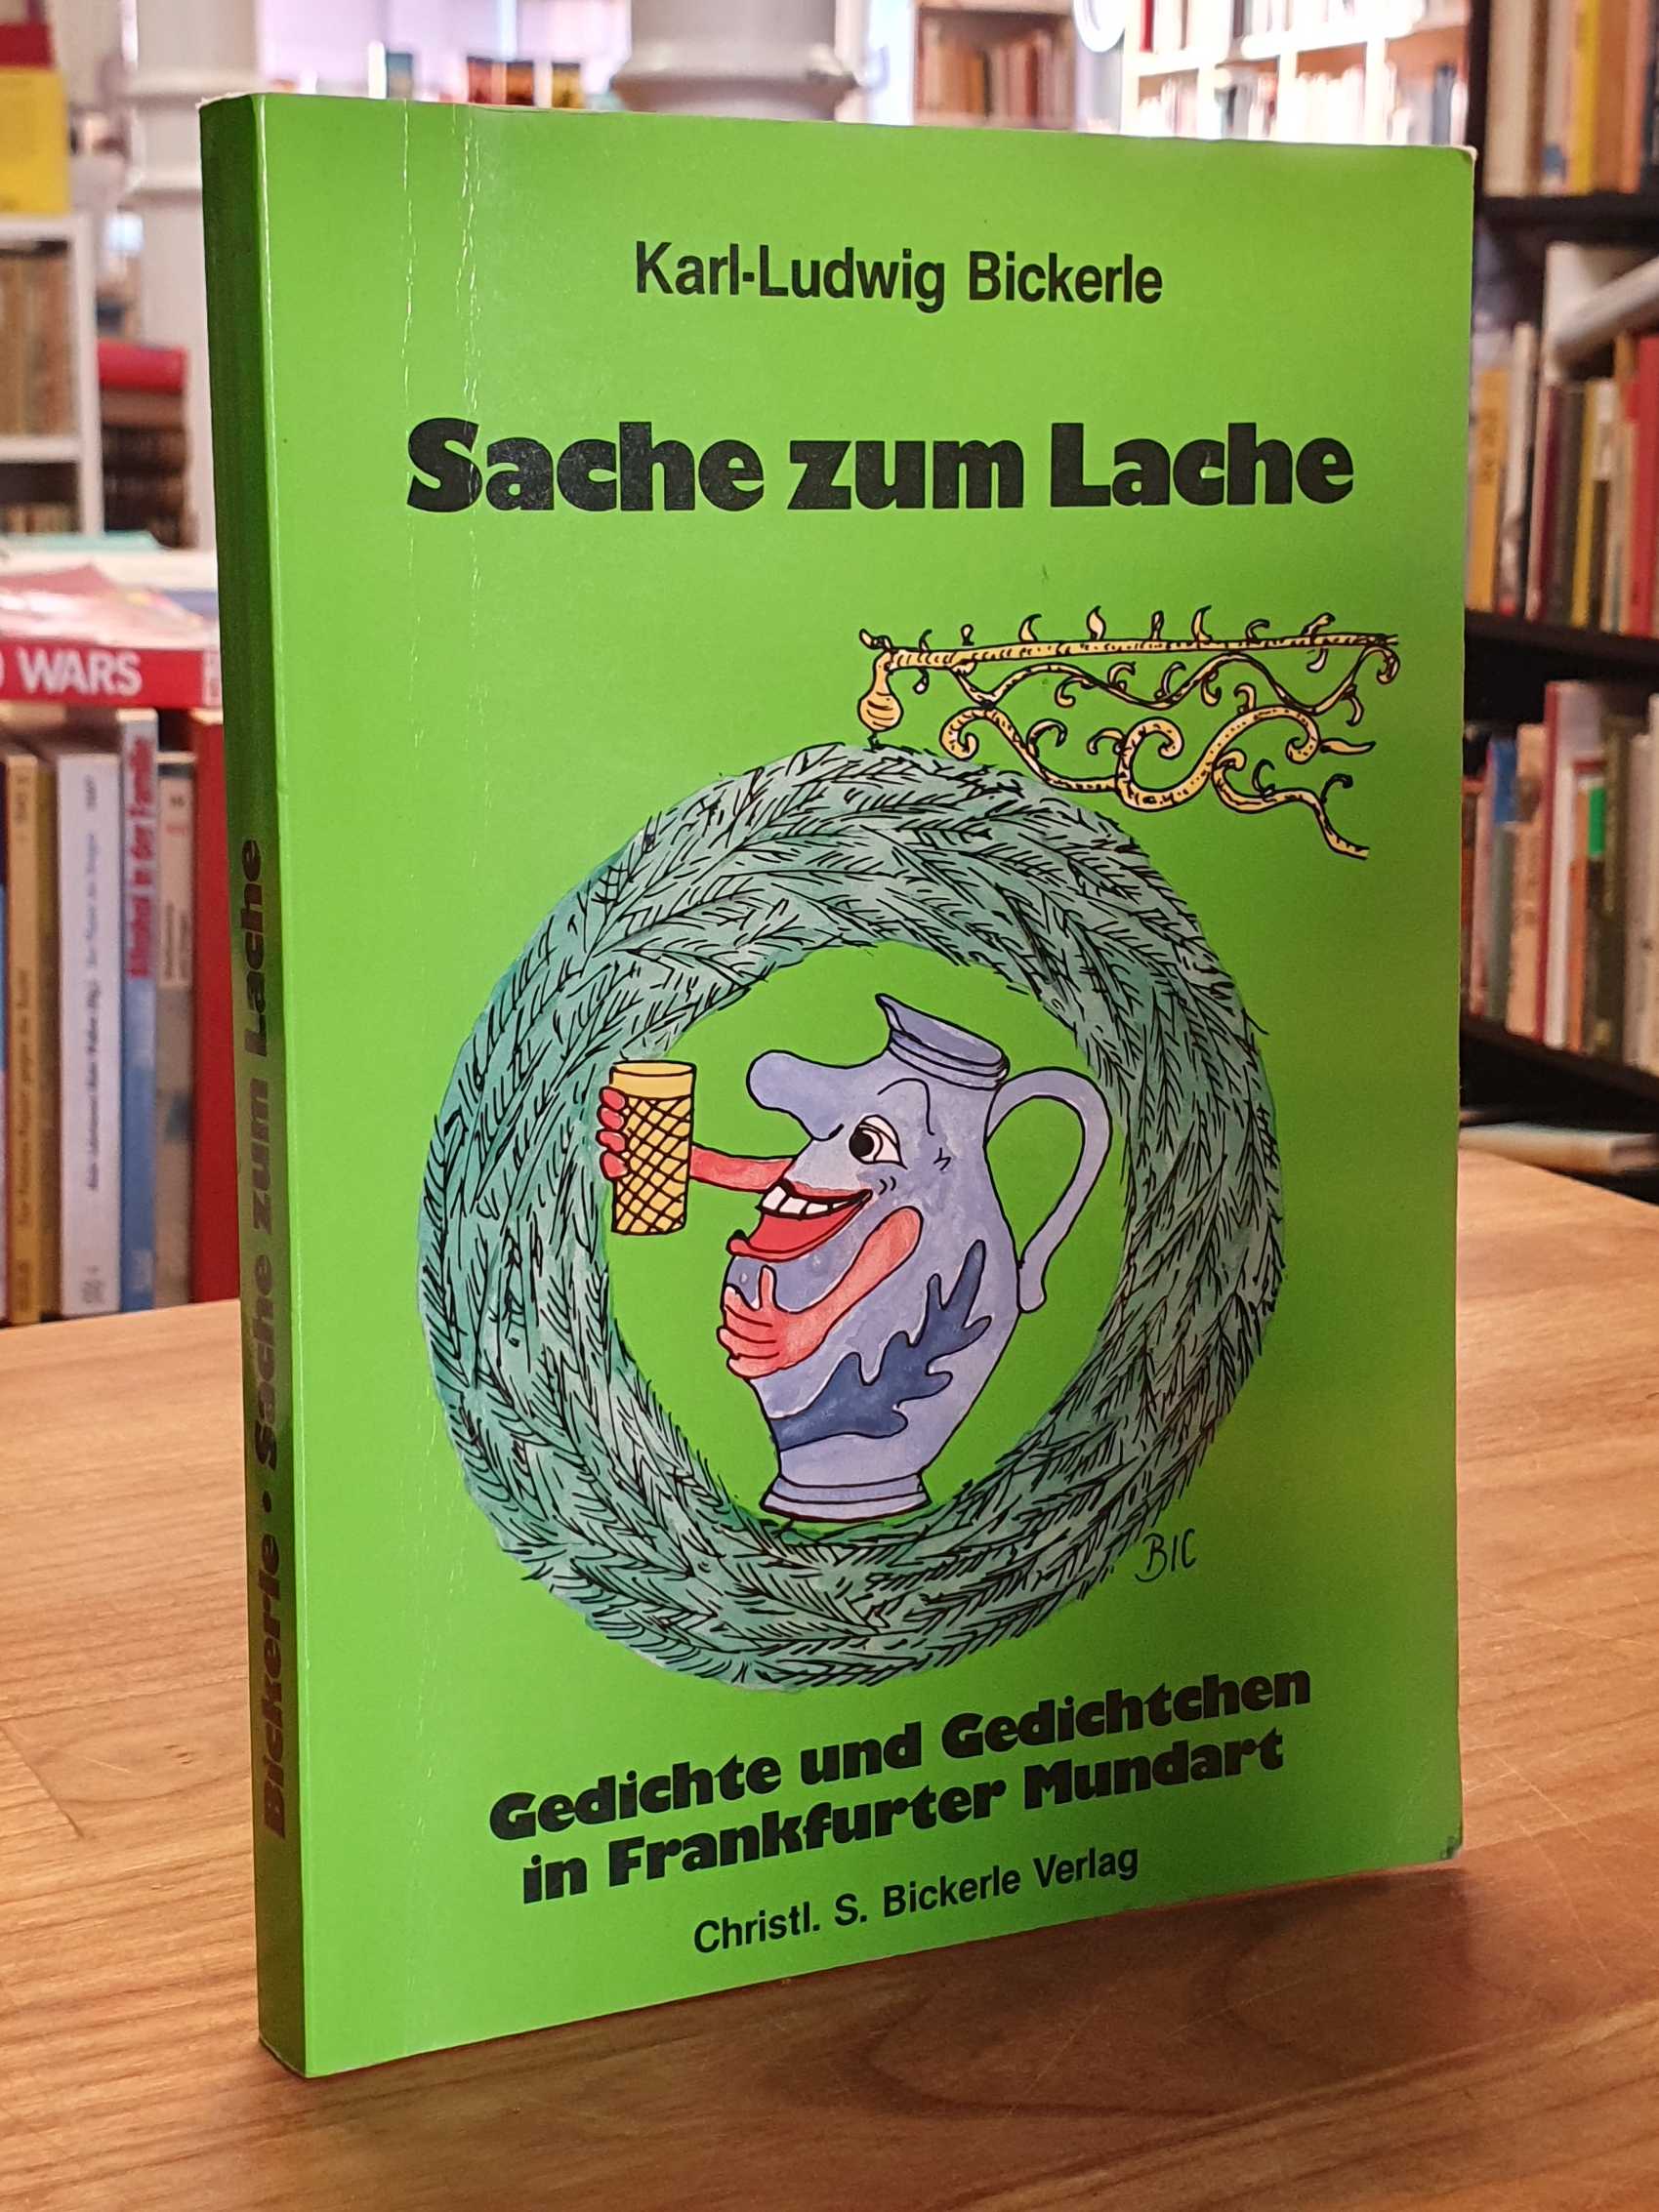 Sache zum Lache - Gedichte und Gedichtchen in Frankfurter Mundart (signiert), mit Zeichnungen des Verfassers, - Bickerle, Karl Ludwig,